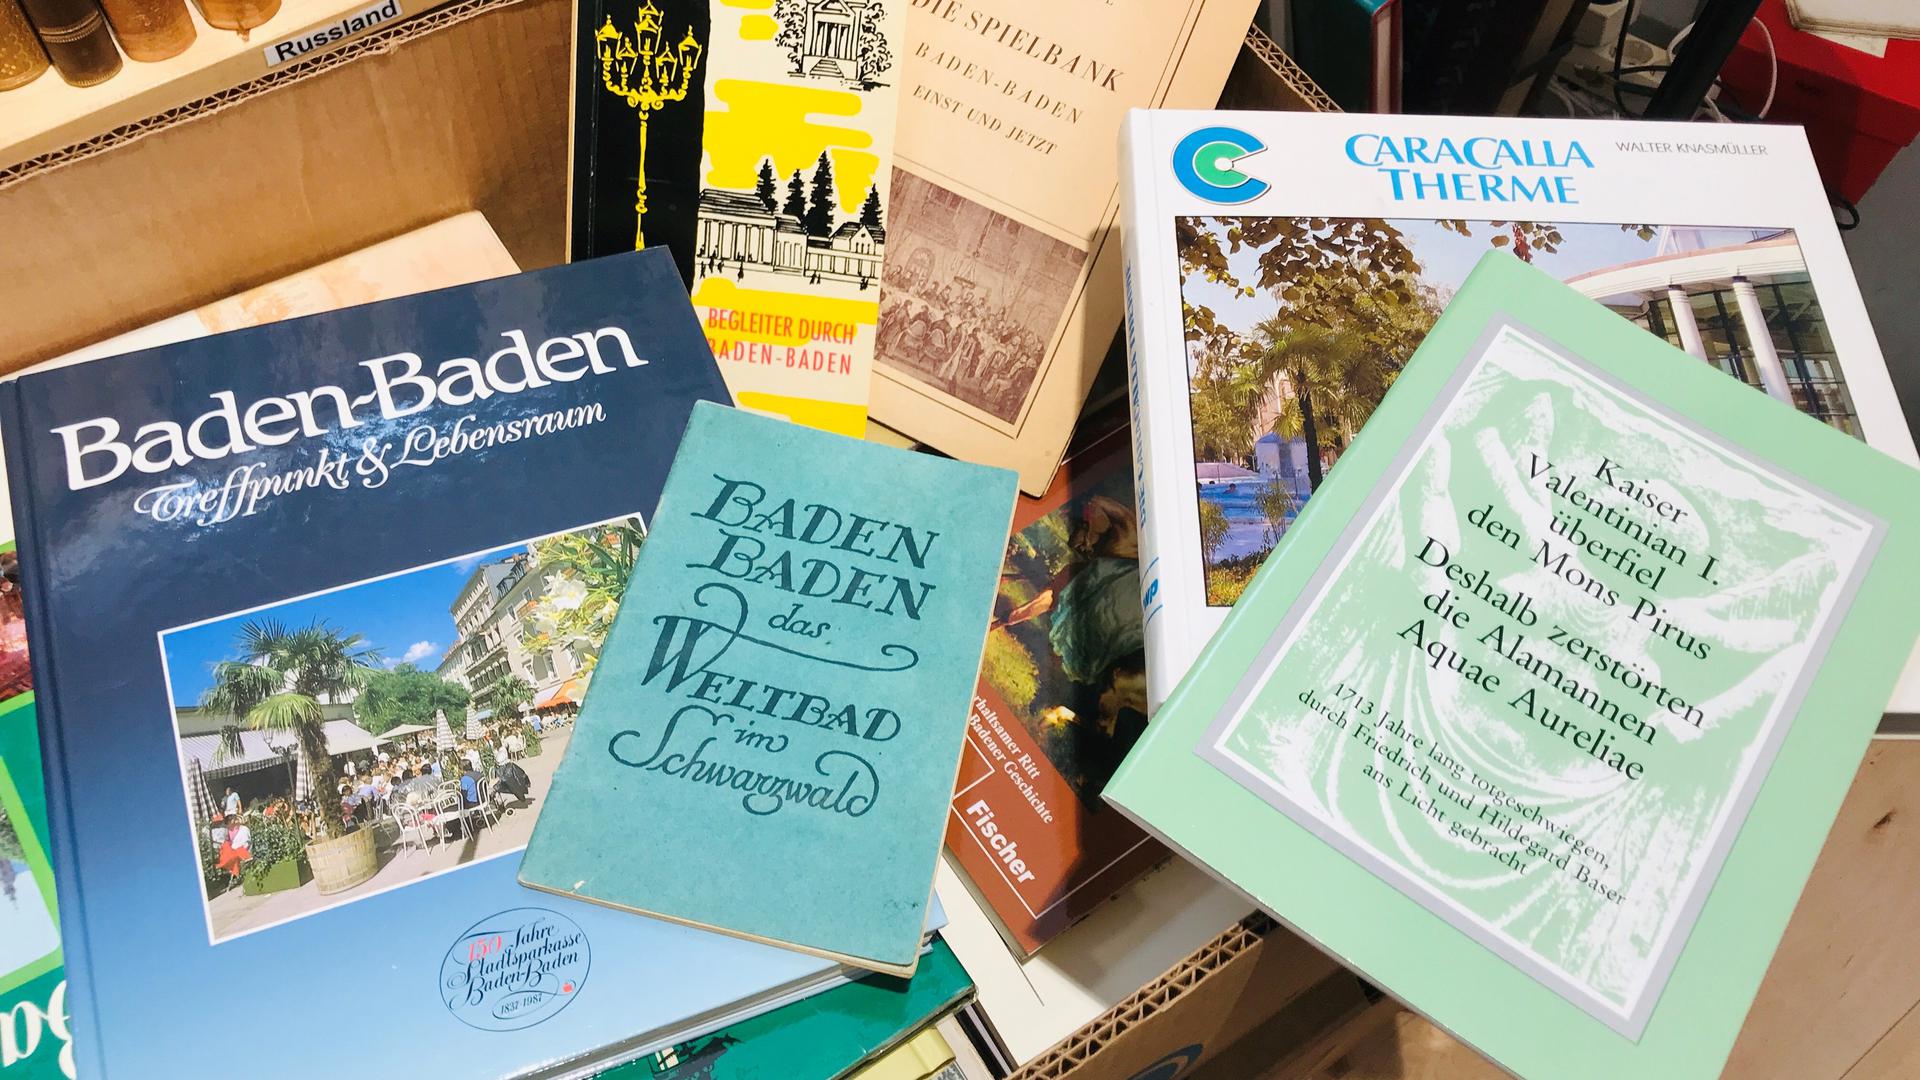  In einer Kiste im Antiquariat im Baldreit liegen Bücher mit Bezug zu Baden-Baden. 